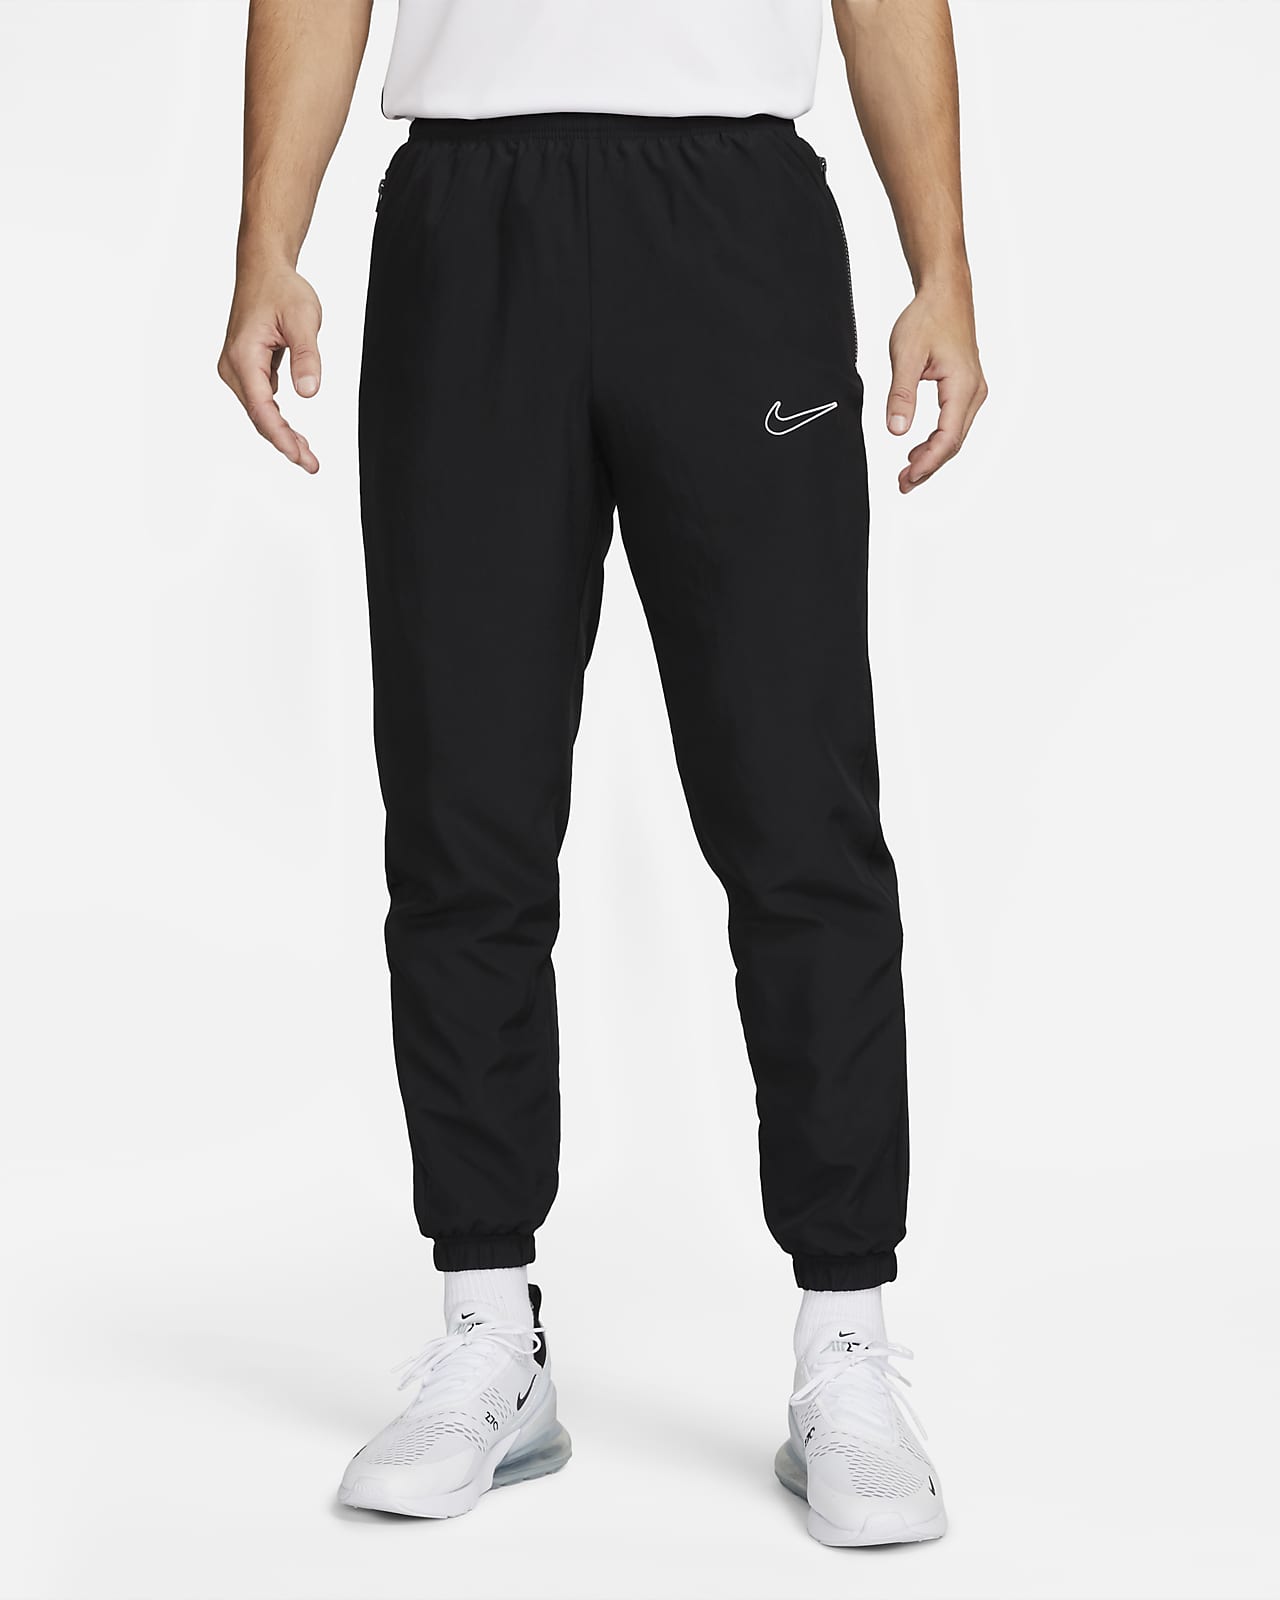 Pantalon de foot Nike Academy Dri-FIT pour homme